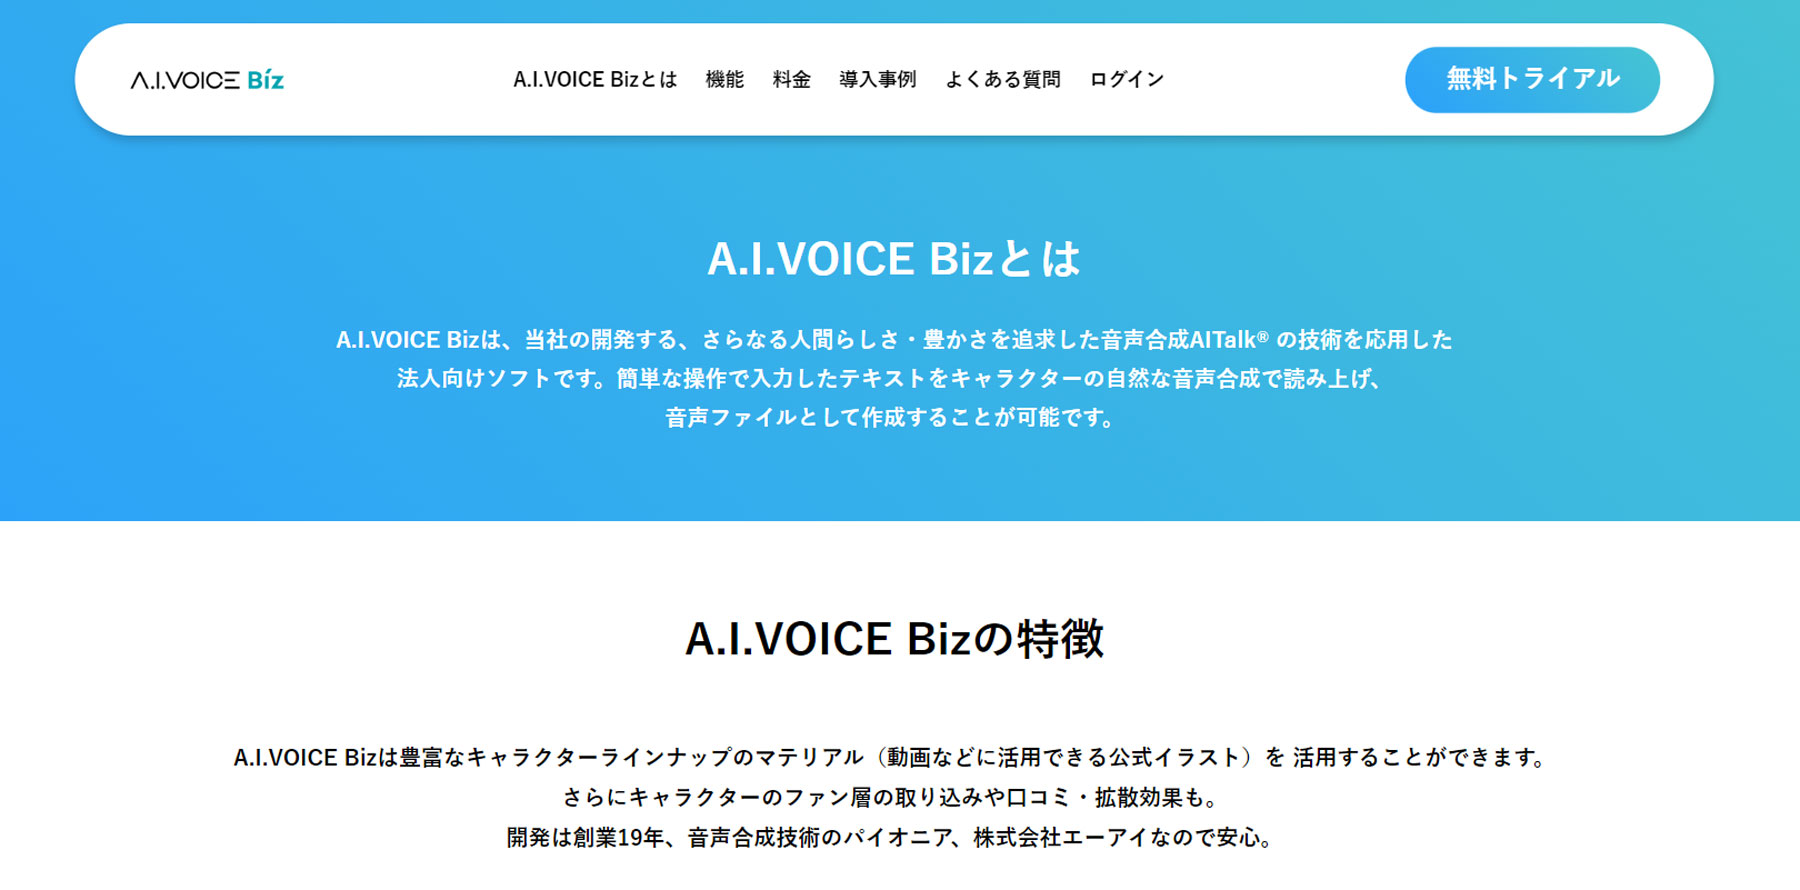 A.I.VOICE Biz公式Webサイト